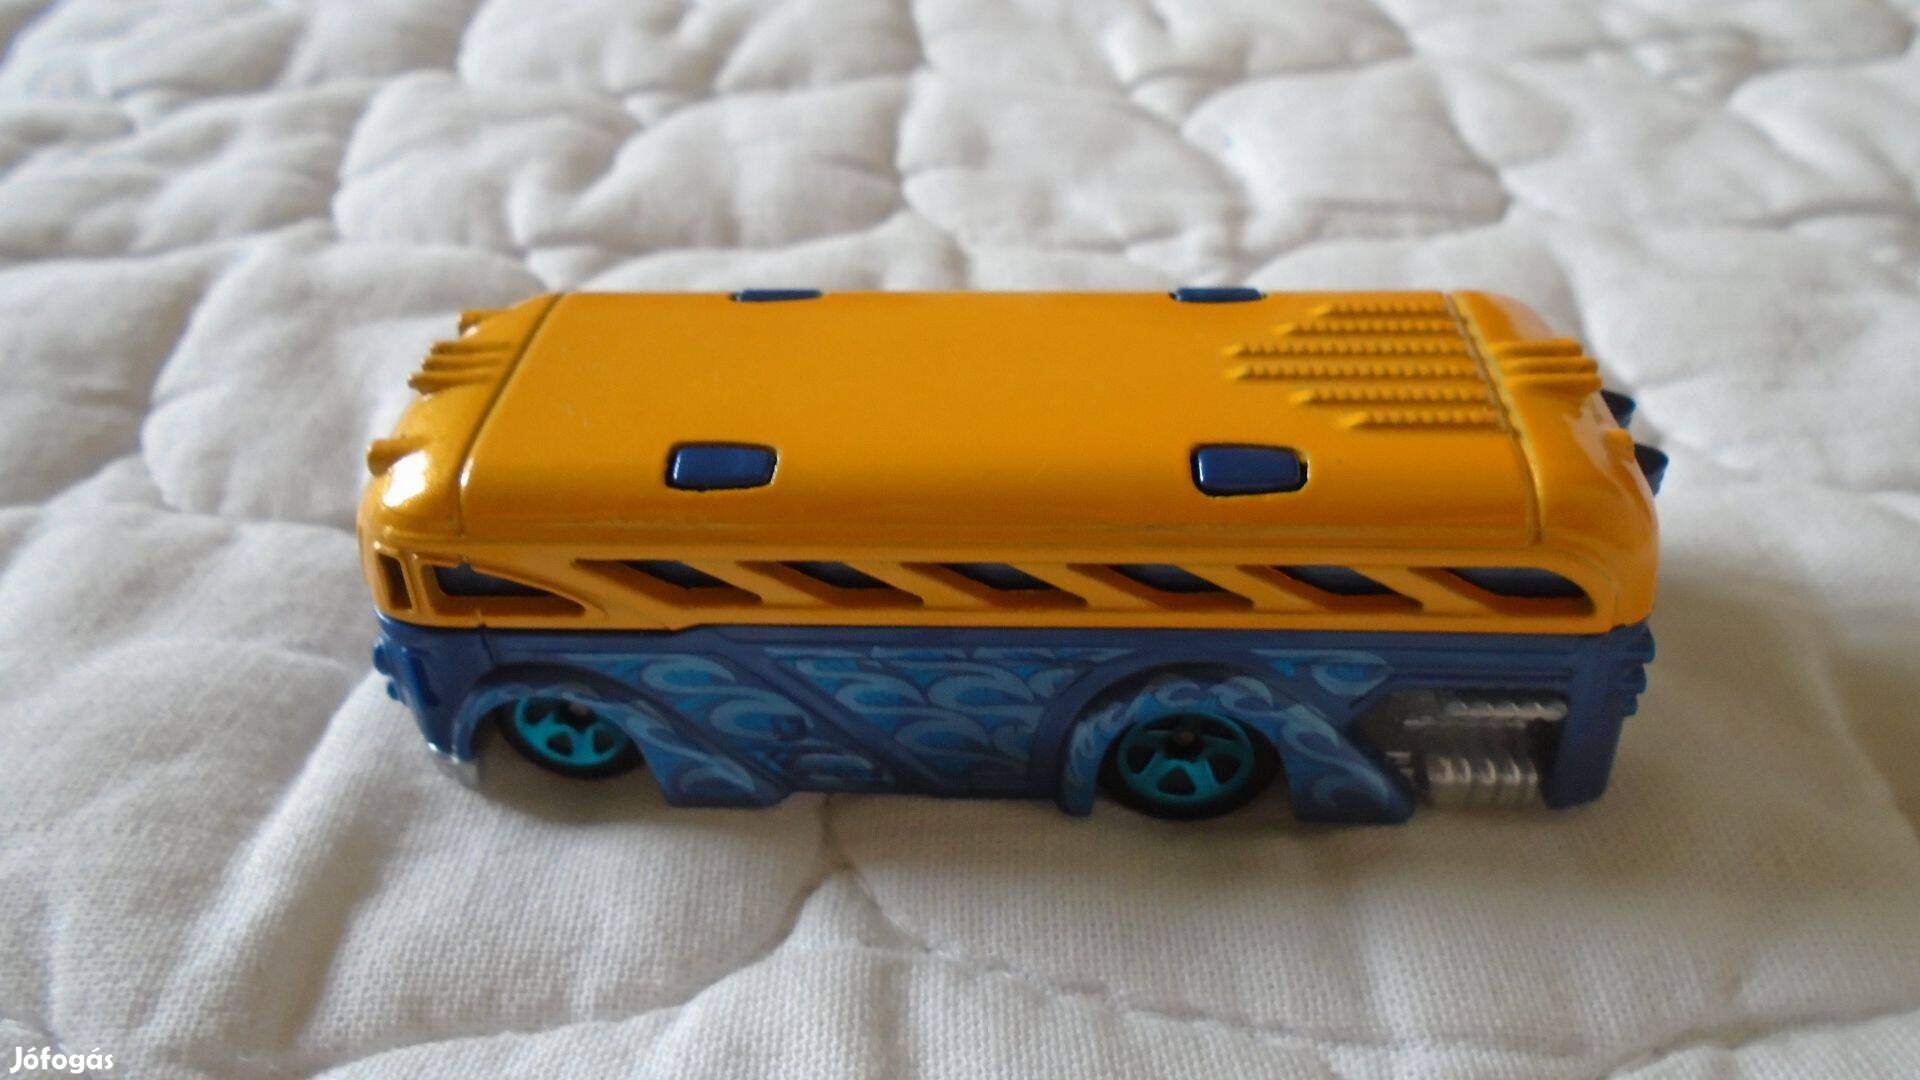 Hot Wheels - sárga-kék, fém autóbusz - Mattel kiadás - újszerű